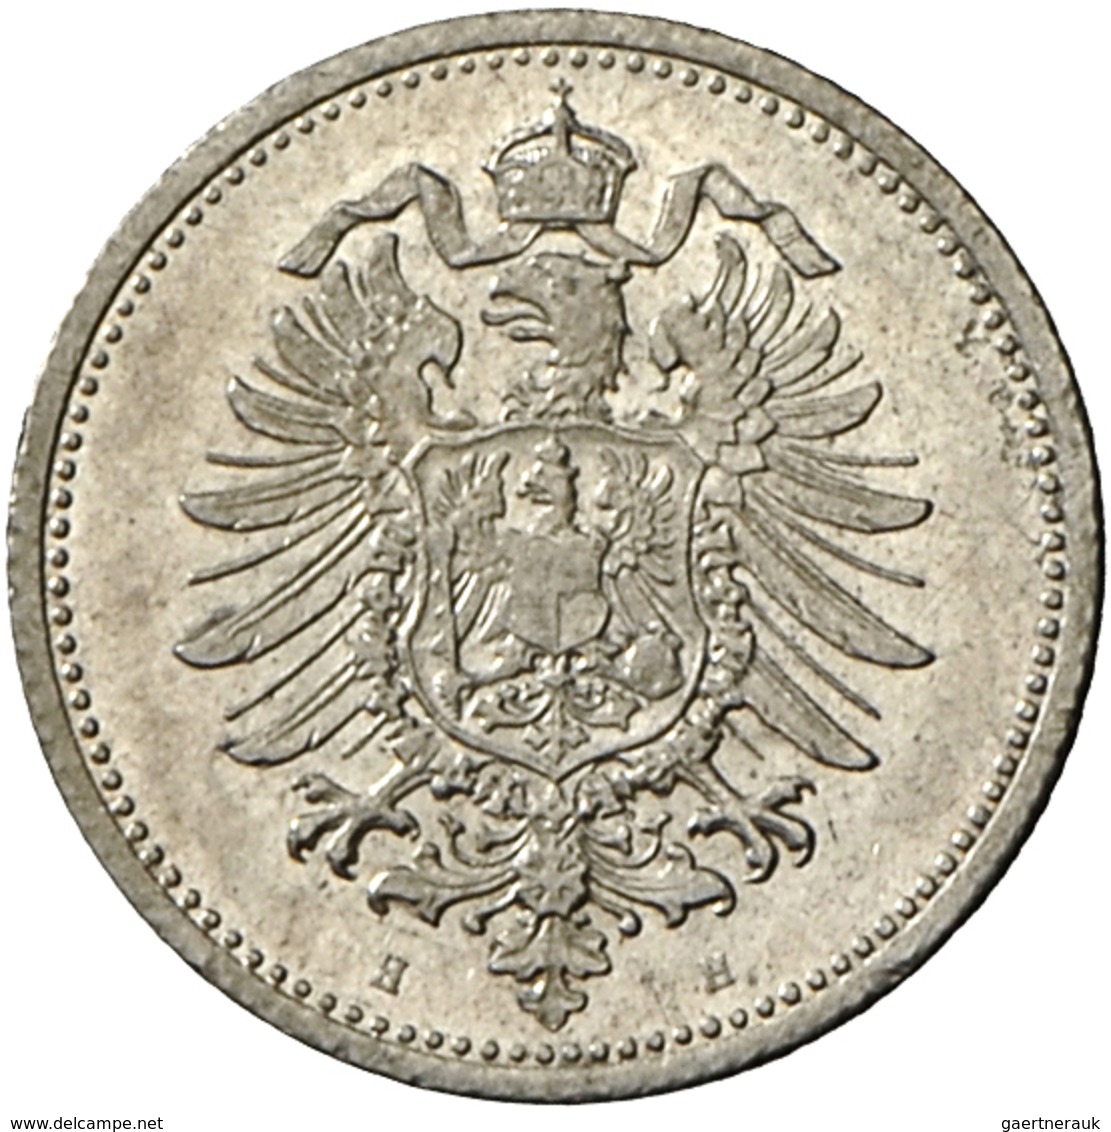 Umlaufmünzen 1 Pf. - 1 Mark: 20 Pfennig 1873 H, Jaeger 5, AKS 8, Auflage: 54.000 Exemplare, Selten, - Taler & Doppeltaler